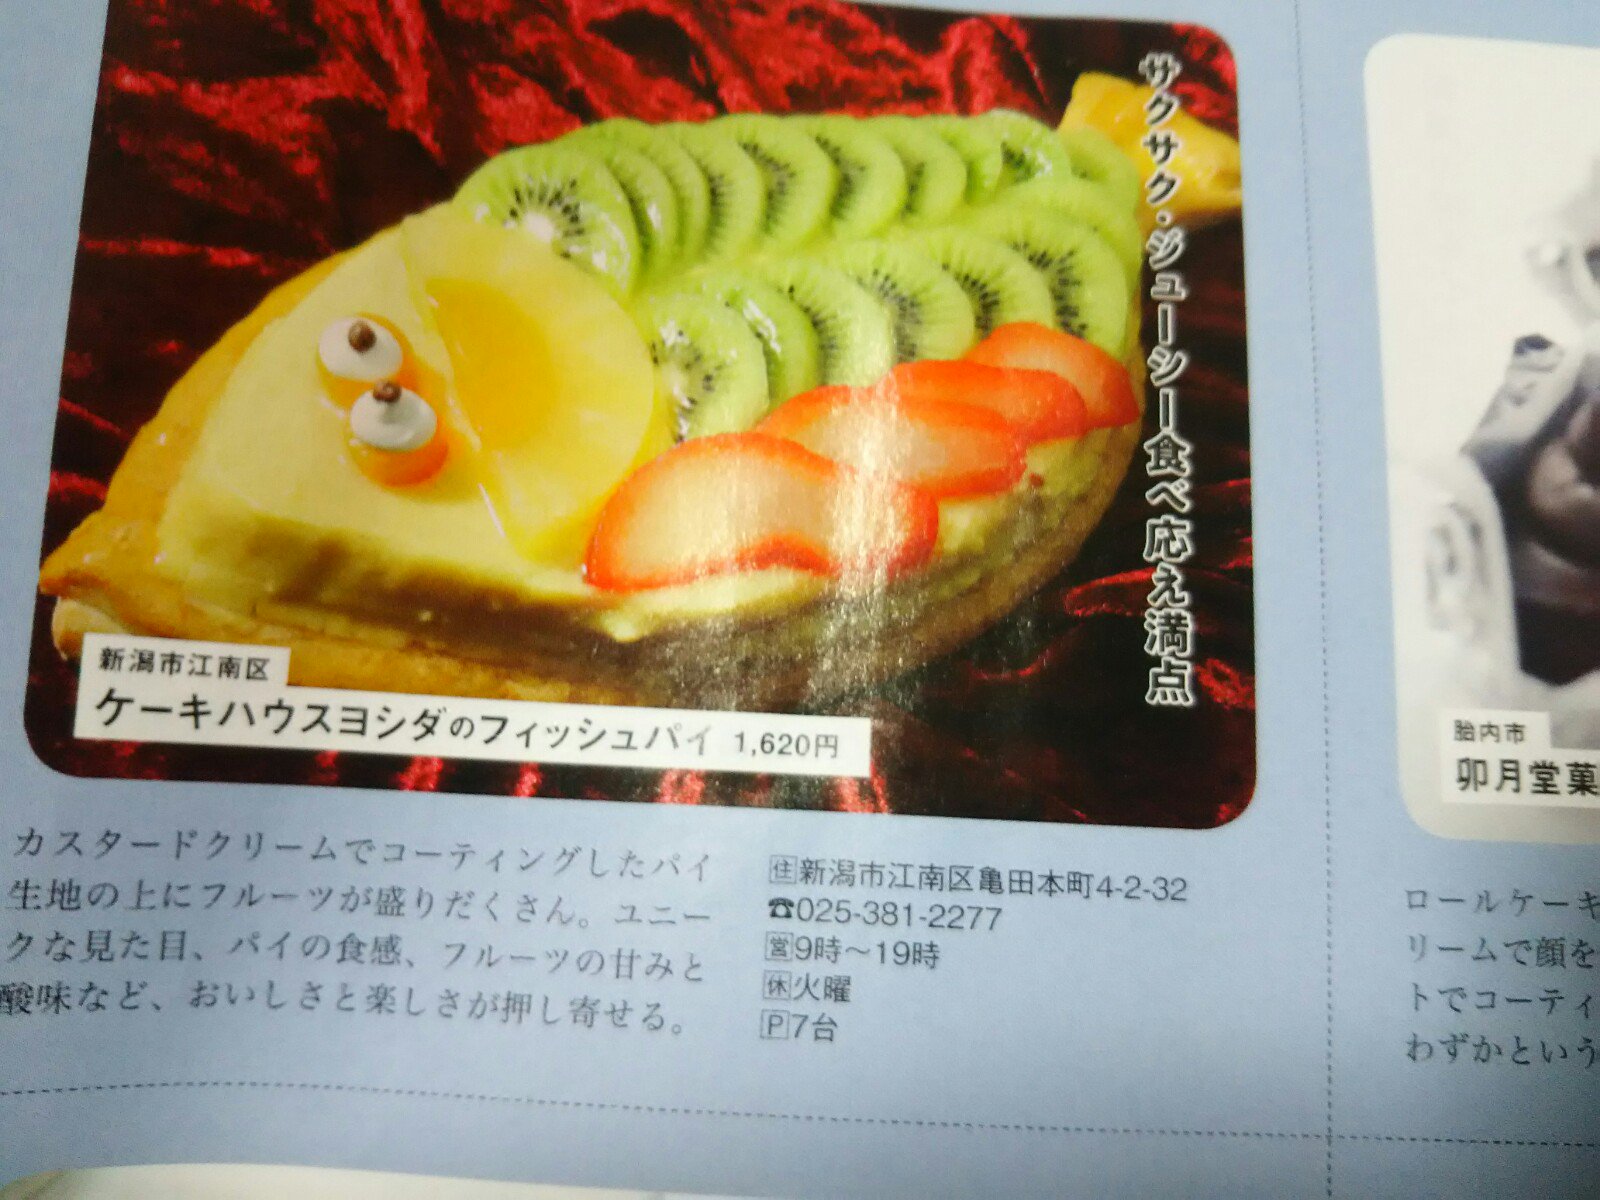 ギャラリーねこい در توییتر 定休日の亀田報告シリーズ 今週号のweek 甘いもの特集で亀田のケーキハウス吉田のフィッシュパイが載っていました お誕生日で頼んだことがありますがパイがサクサクでフルーツがどれも美味しいんですよ 定番の